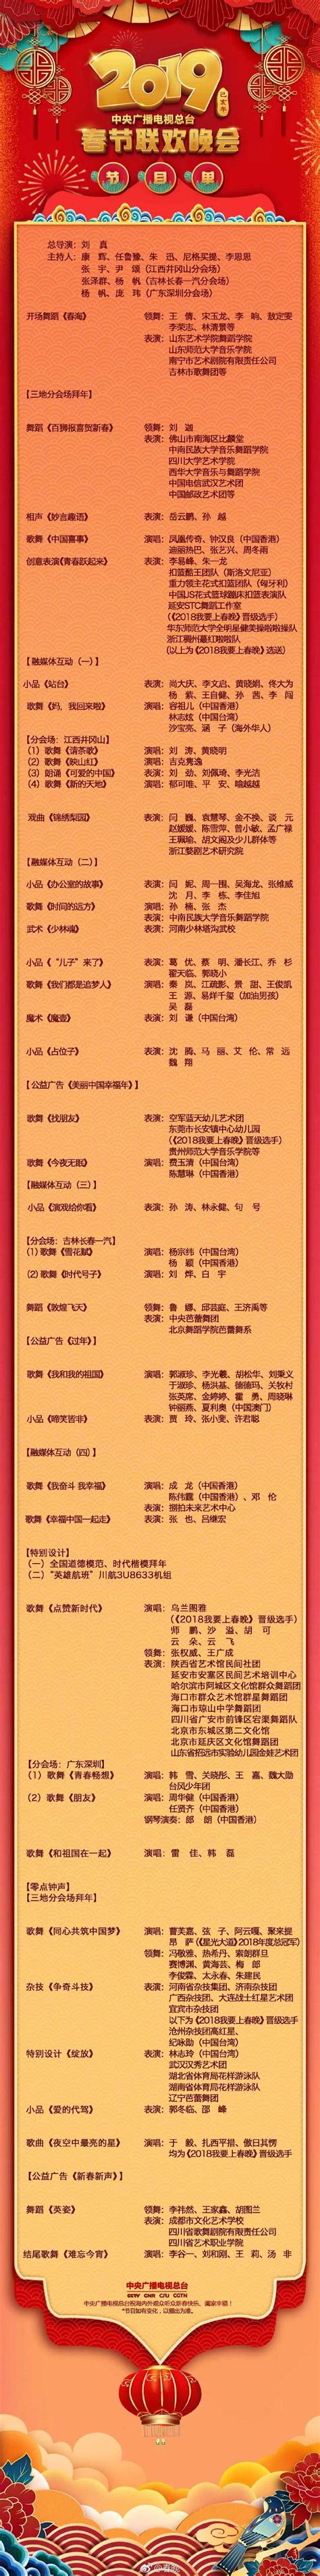 2015央视春晚正式节目单出炉-搜狐新闻